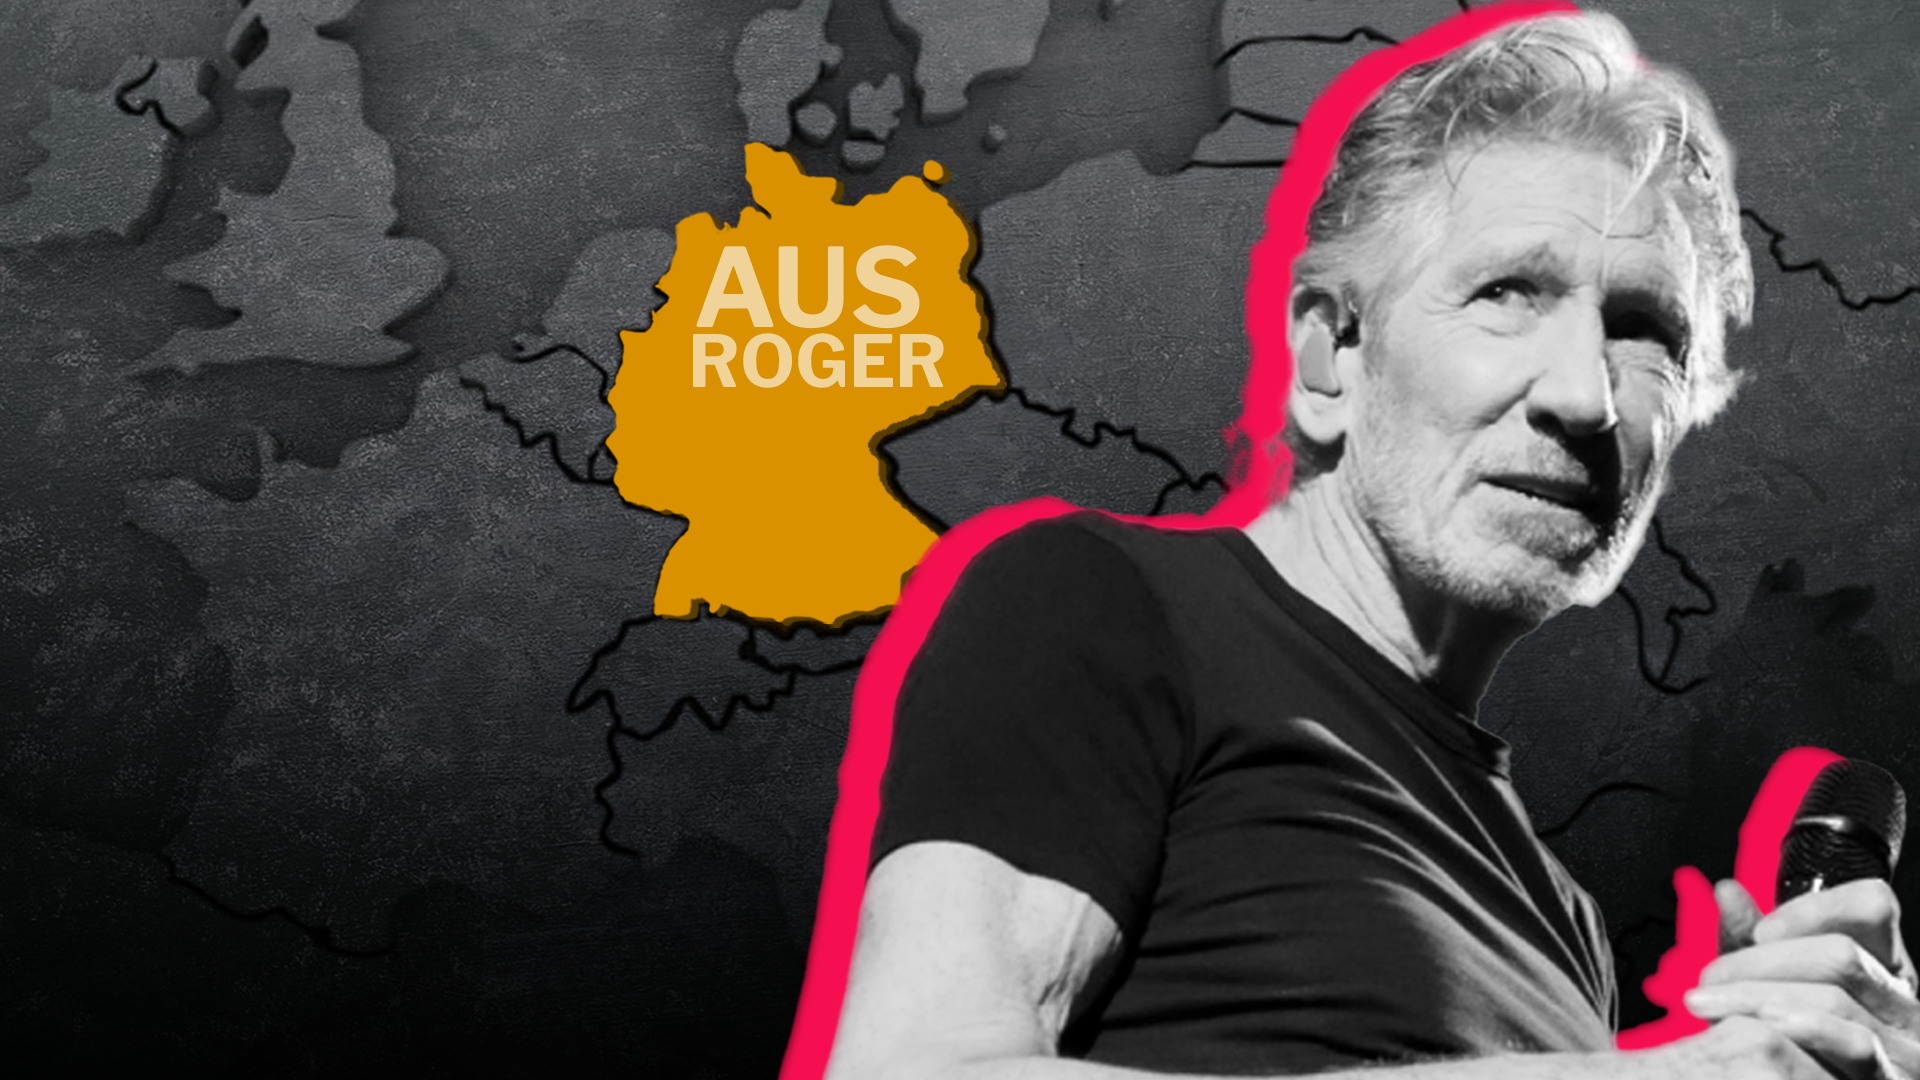 Concierto de Roger Waters fue cancelado en Alemania por comentarios antisemitas